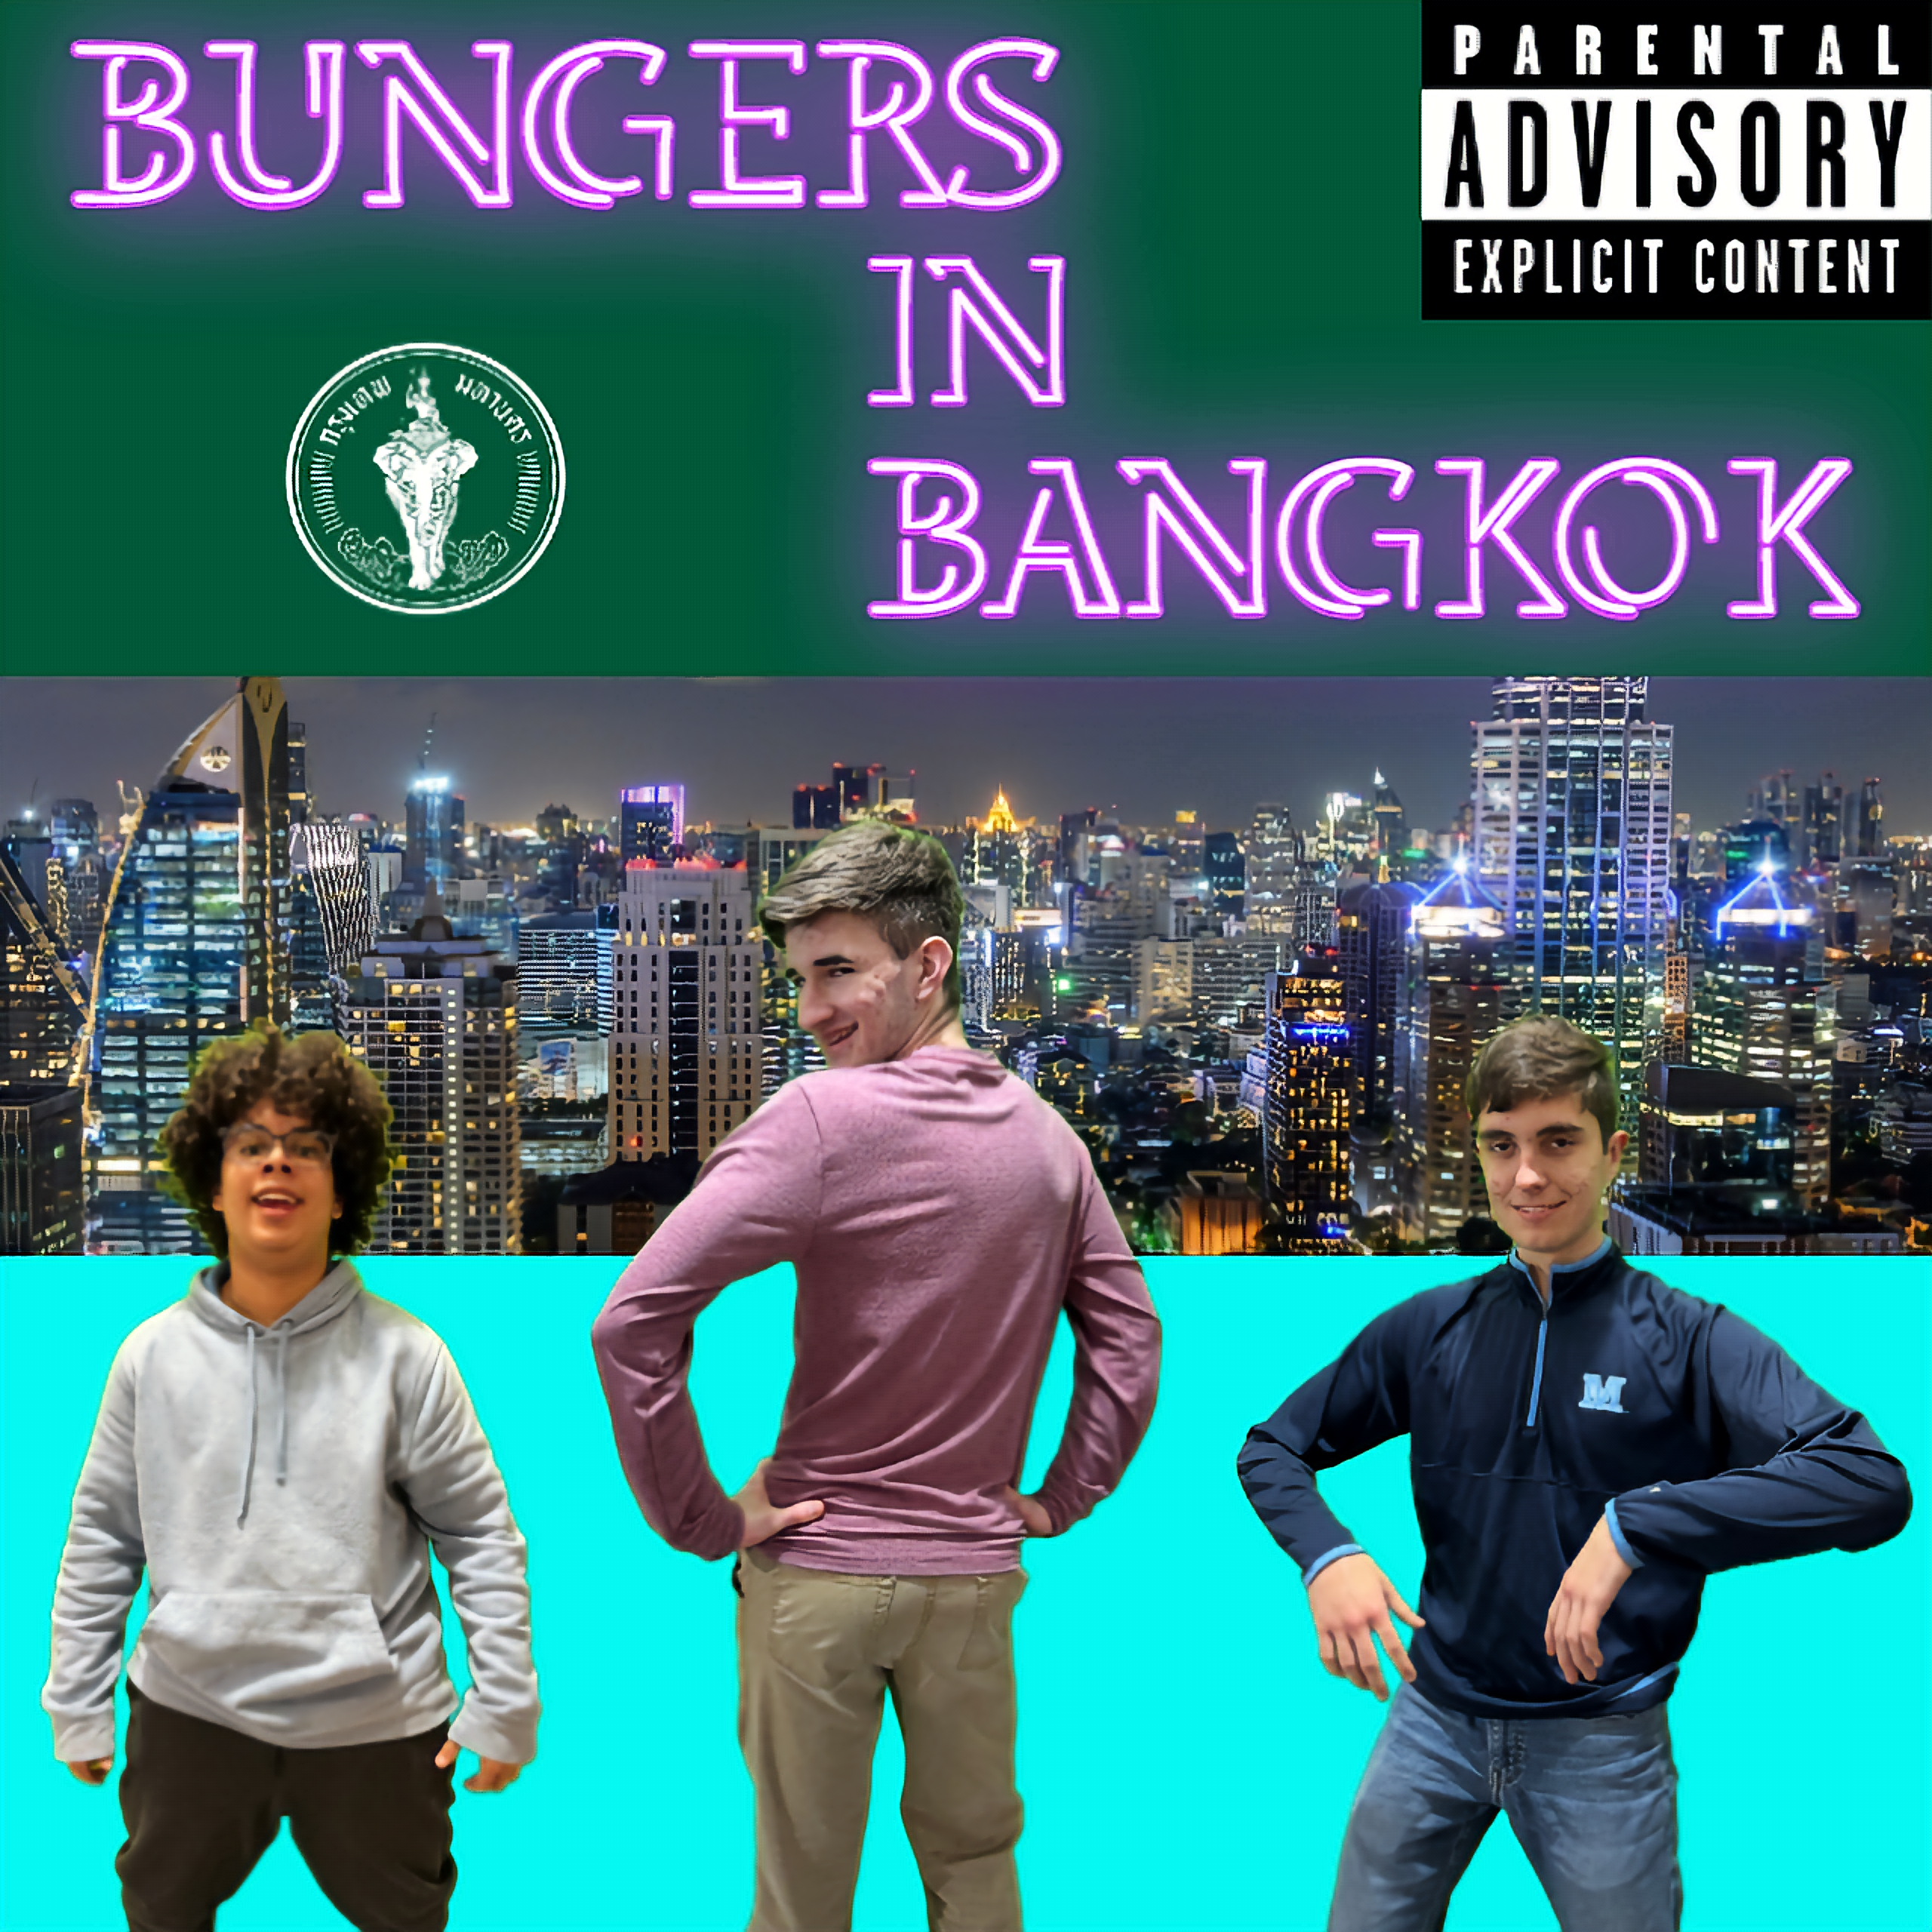 Bungers in Bangkok